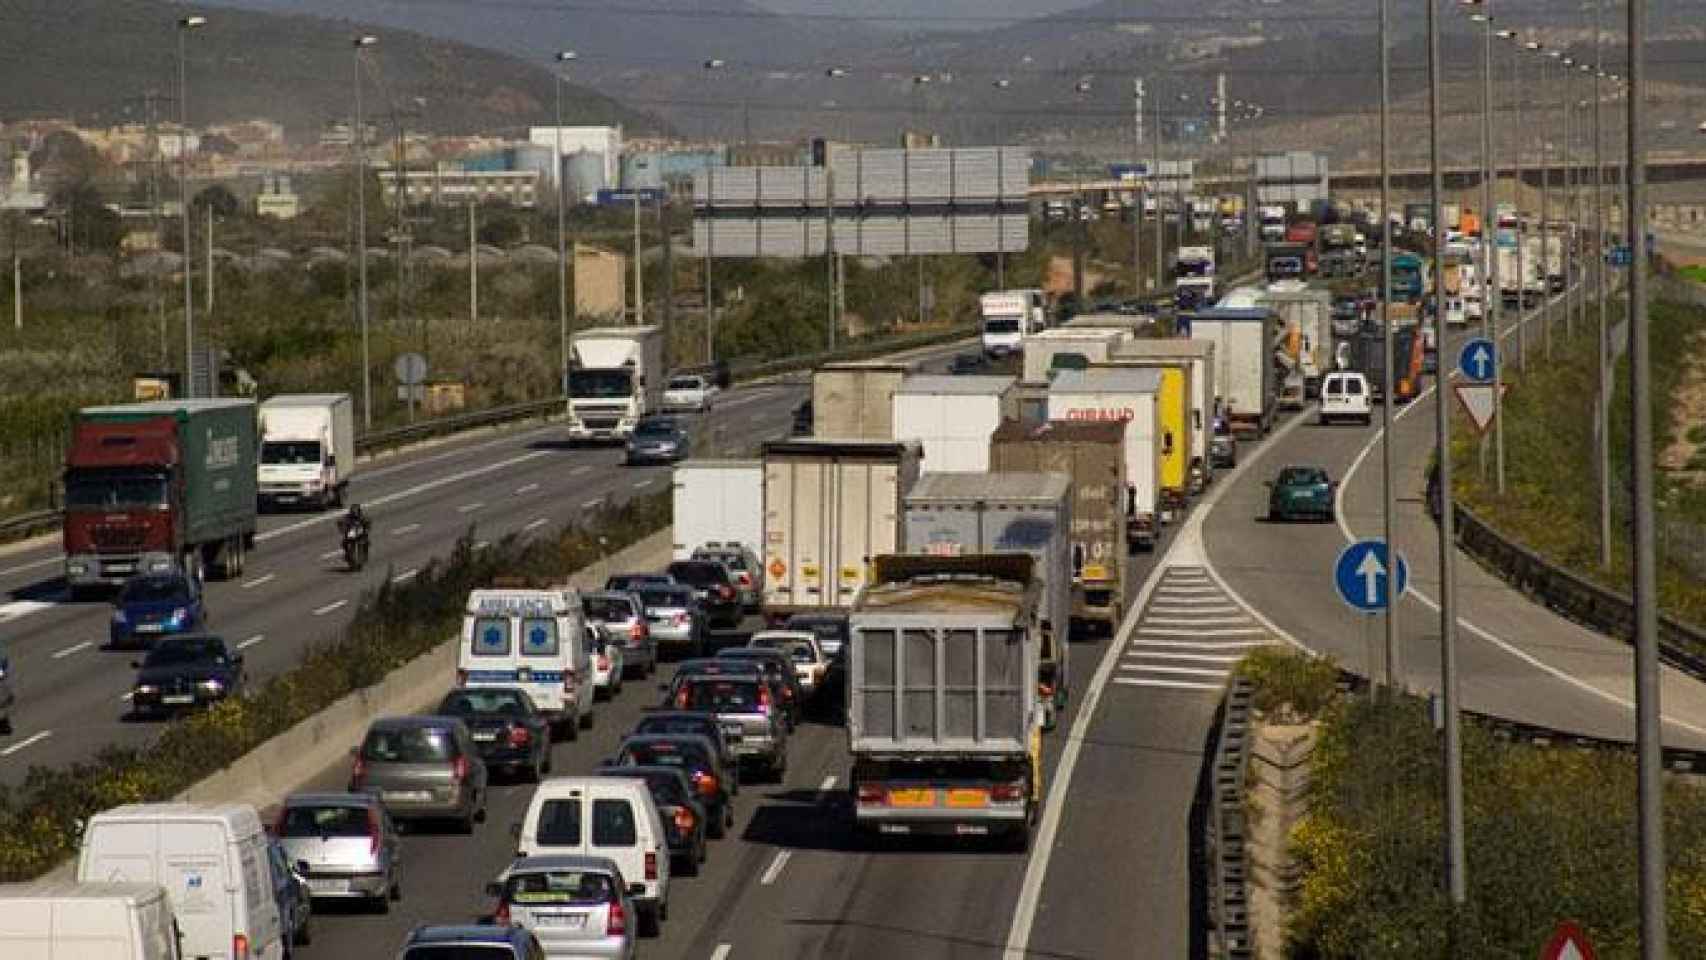 Tráfico en una carretera en representación a las inversiones públicas en infraestructuras / CÁMARA DE COMERCIO DE BARCELONA